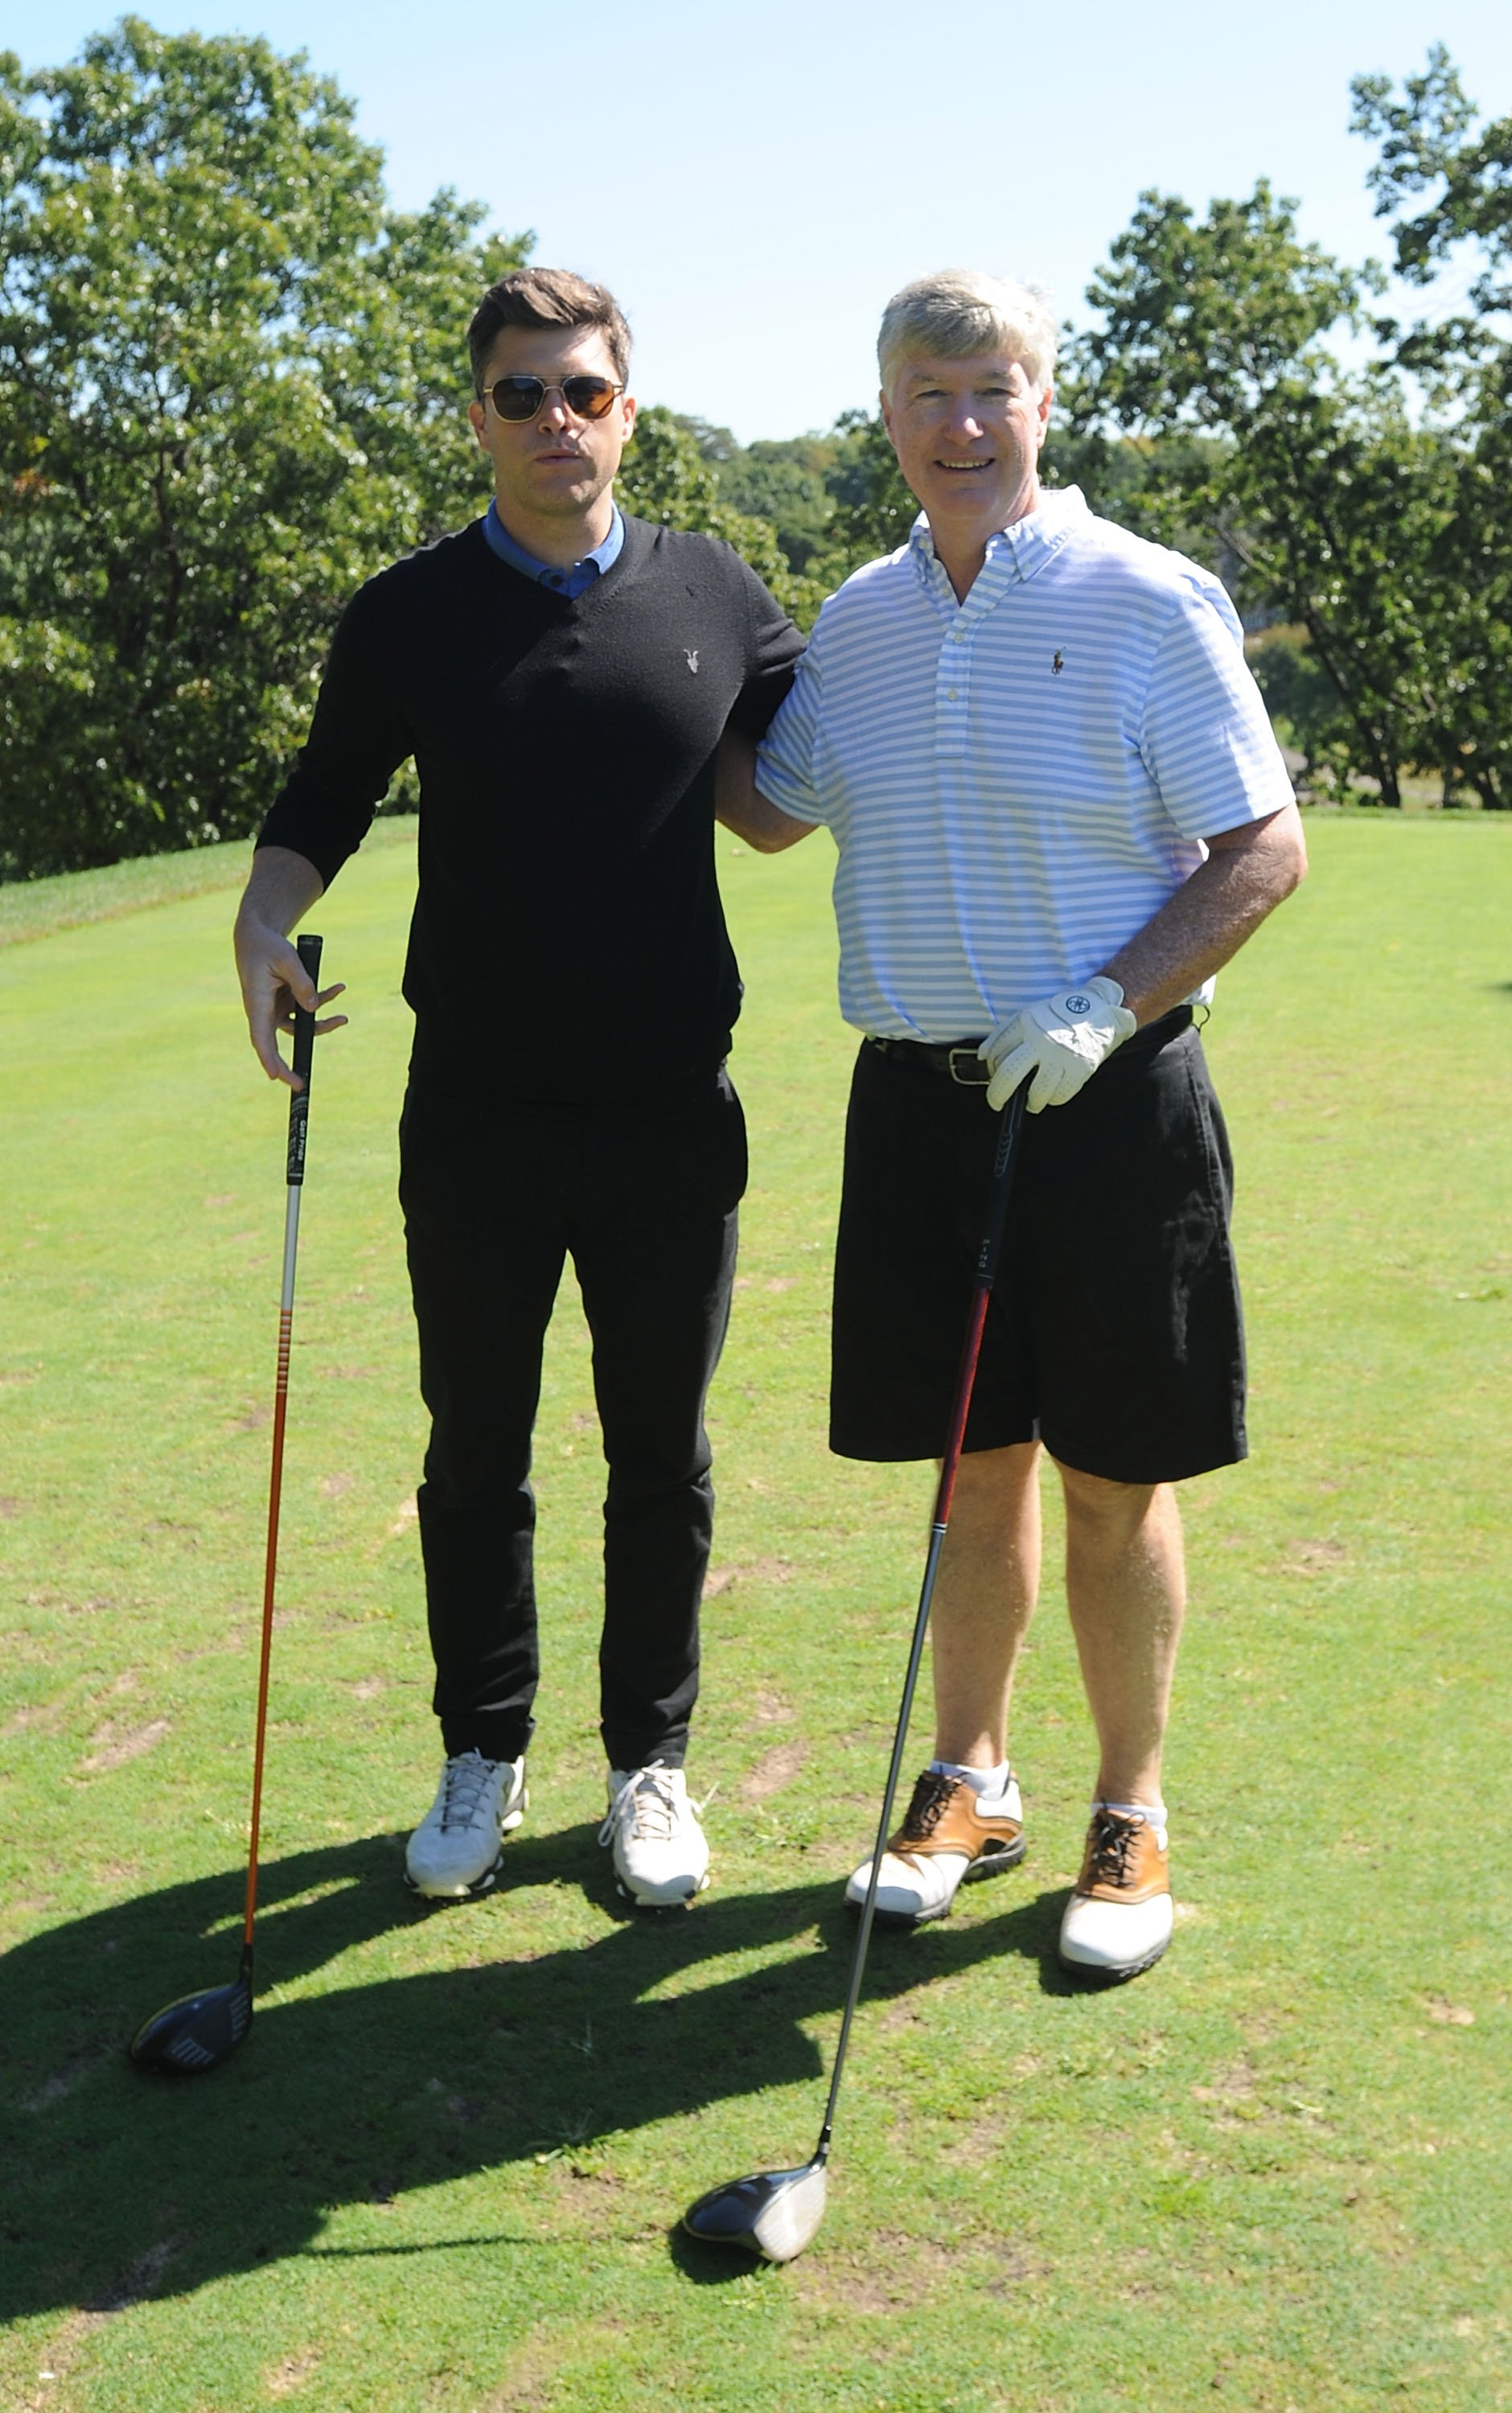   Colin Jost ve babası Daniel A. Jost, 2 Ekim 2017'de New York'ta Richmond Country Club'da düzenlenen 2. Yıllık Laughs On The Links Ünlü Golf, Tenis ve Bocce Gezisinde poz veriyor |  Kaynak: Getty Images